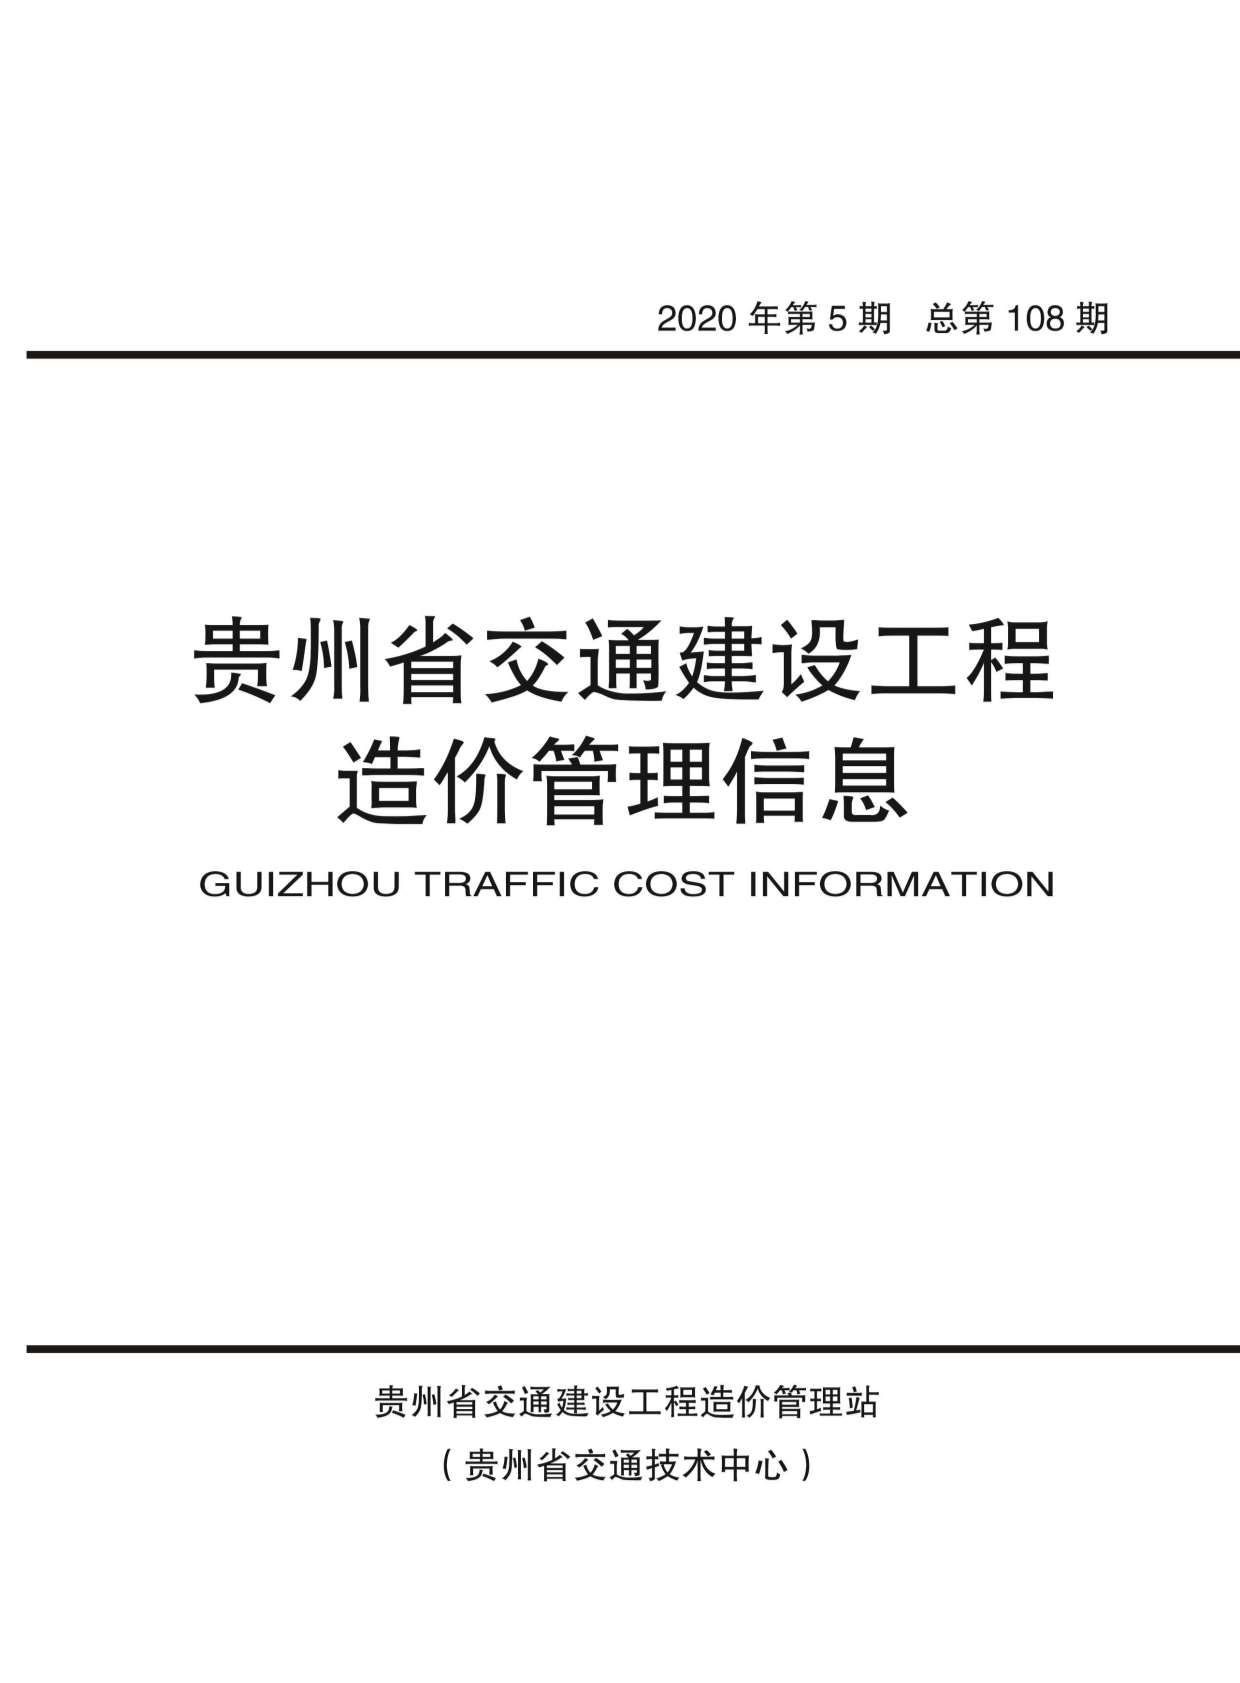 贵州省2020年5月交通建设工程造价管理信息造价库信息价